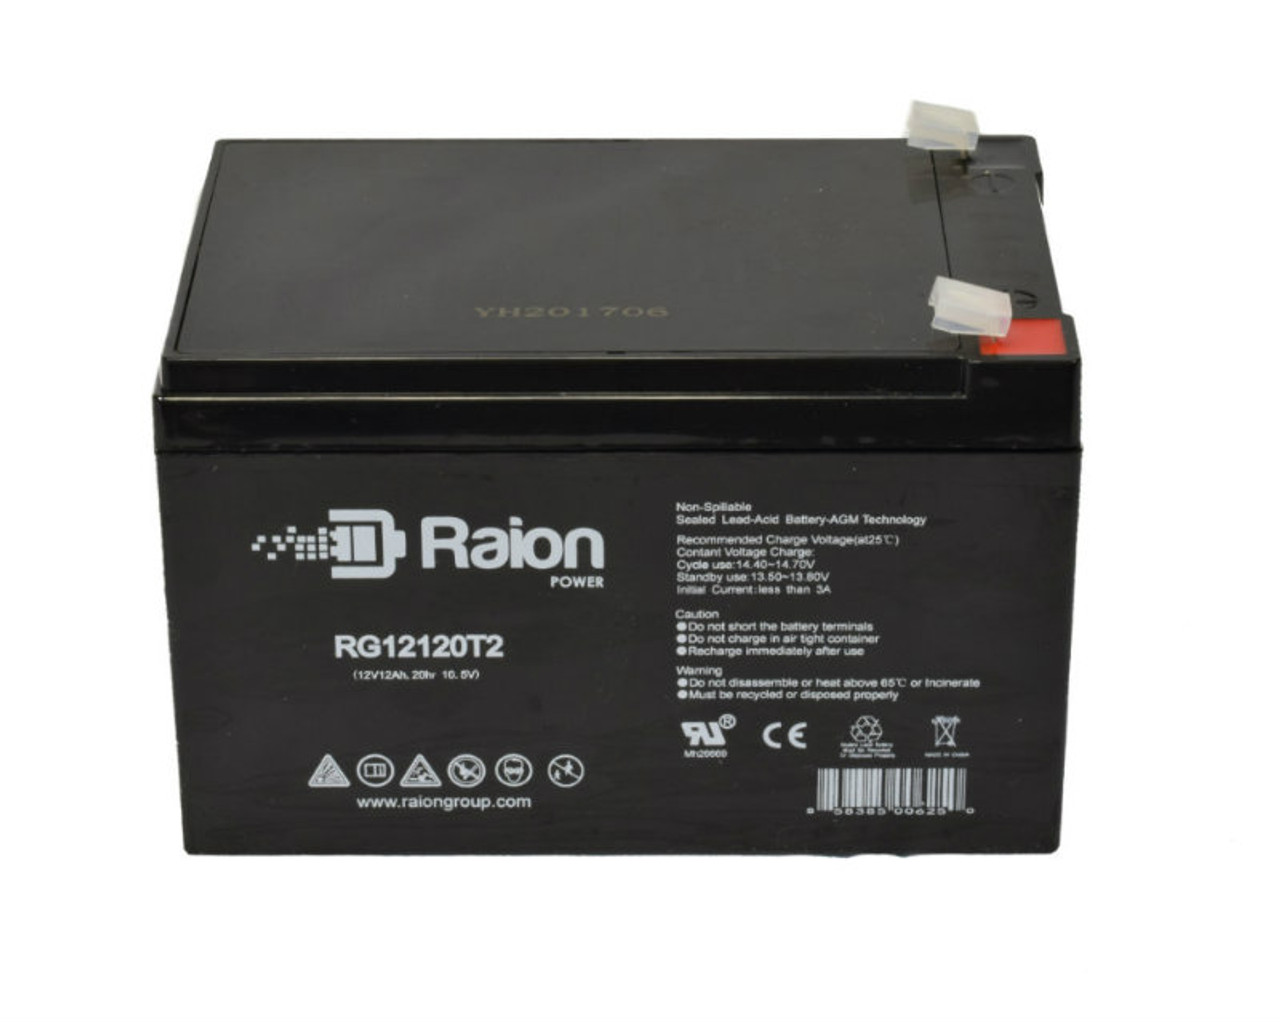 Raion Power RG12120T2 SLA Battery for Plus Power PP12-10